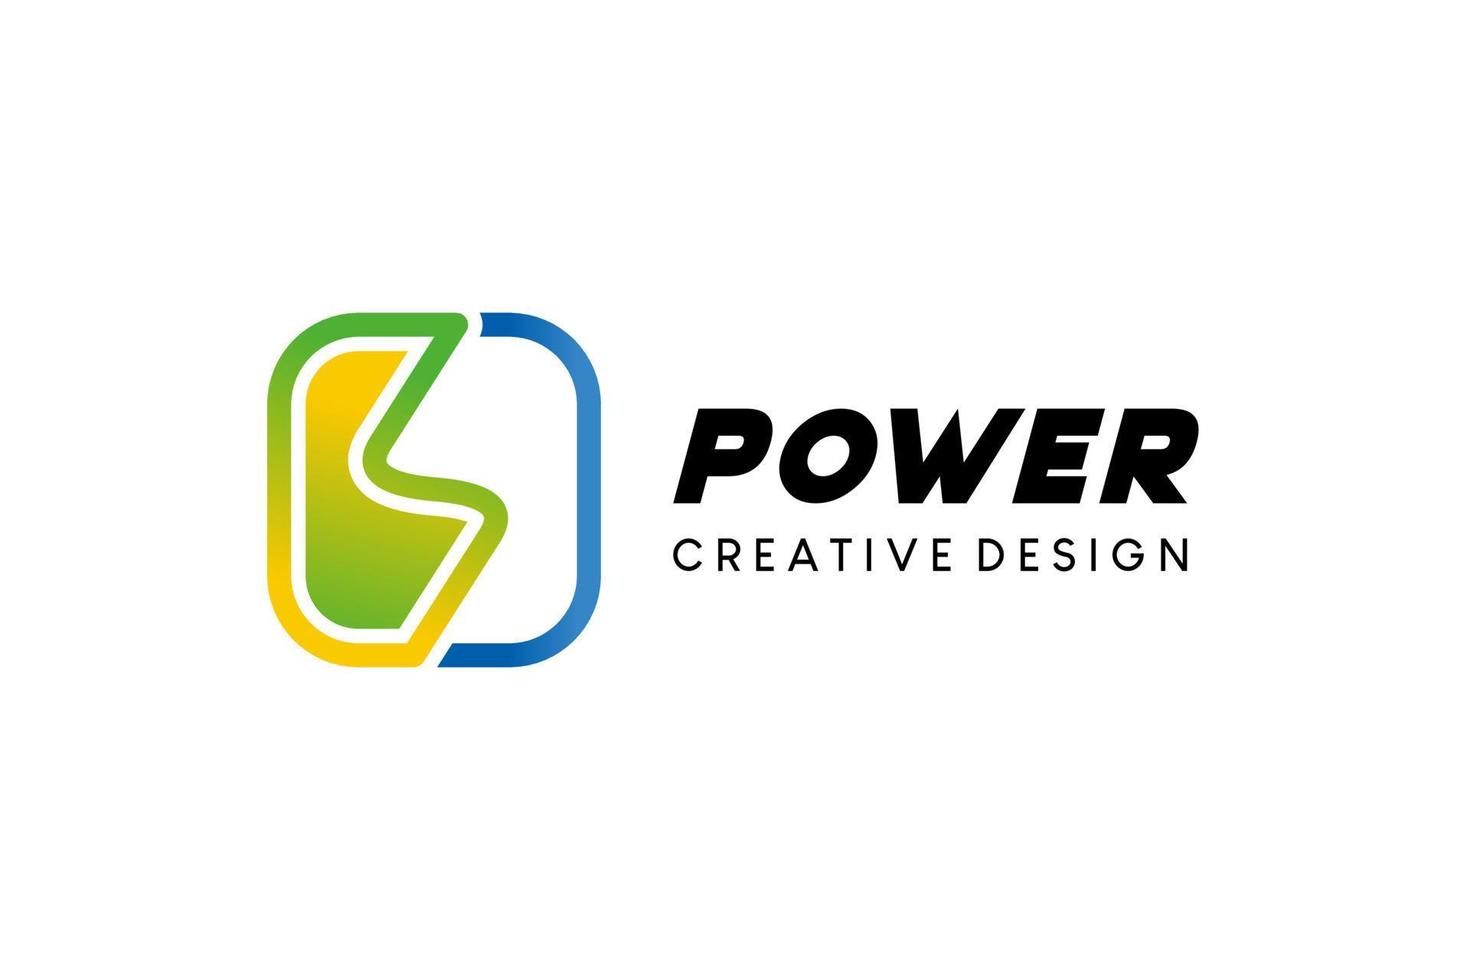 création de logo de puissance énergétique de la lettre colorée, illustration vectorielle de la tension électrique ou de la foudre dans le logo de la boîte vecteur